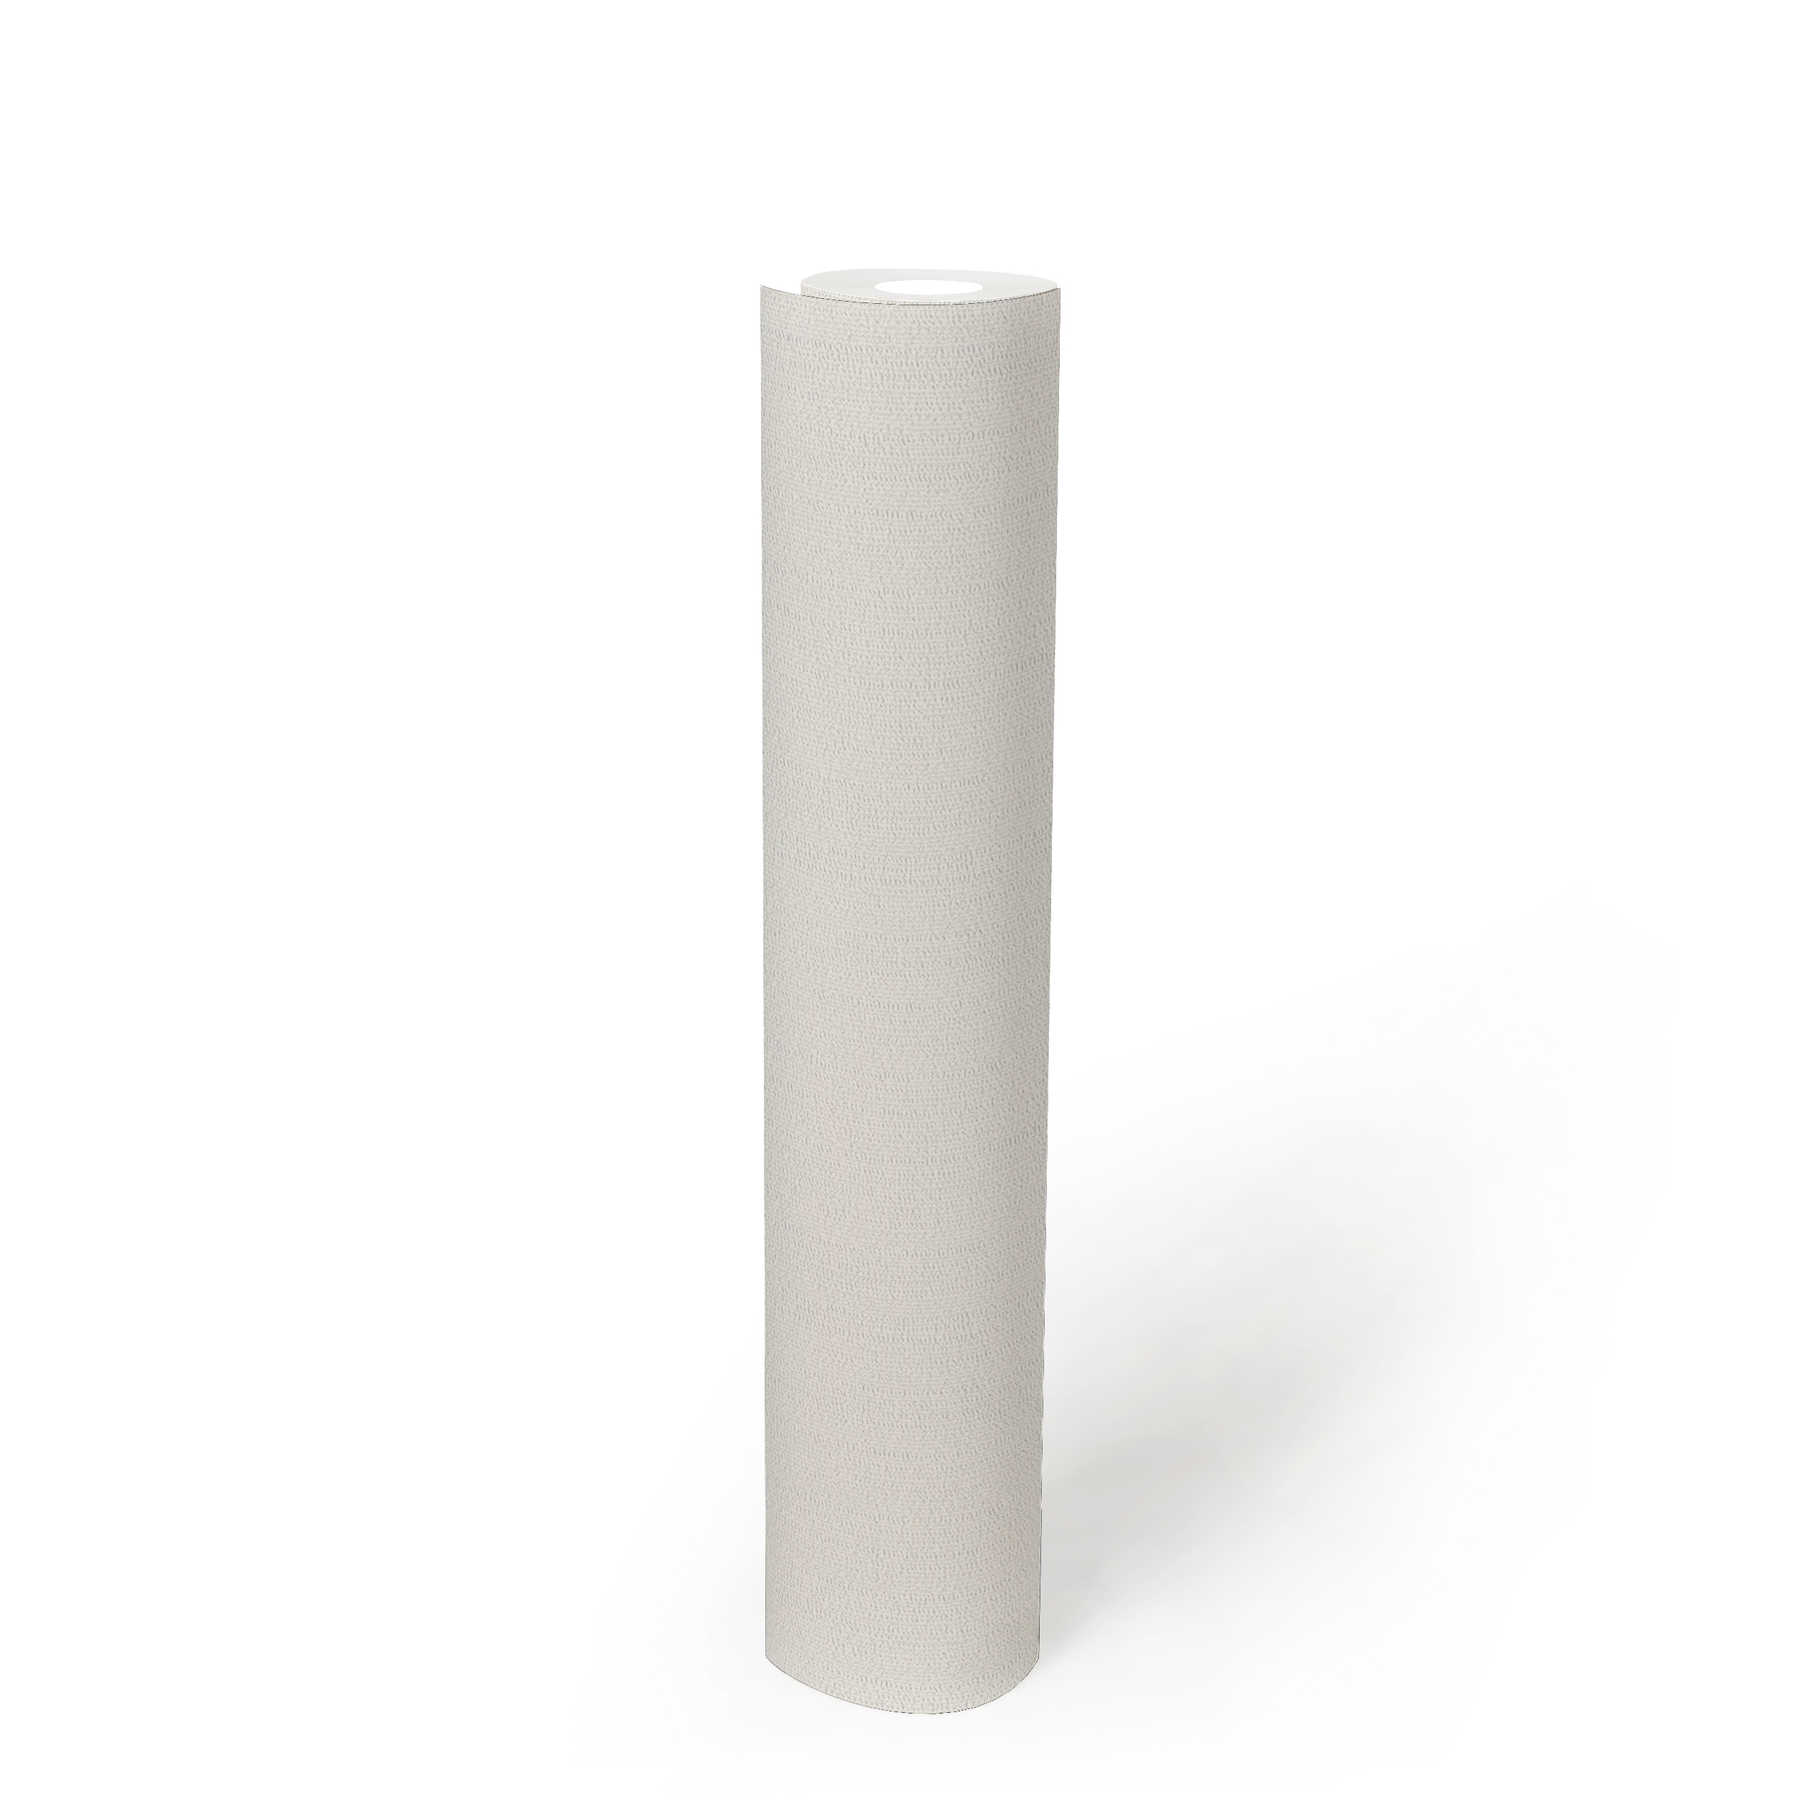             Papier peint intissé blanc uni, mat avec structure de mousse
        